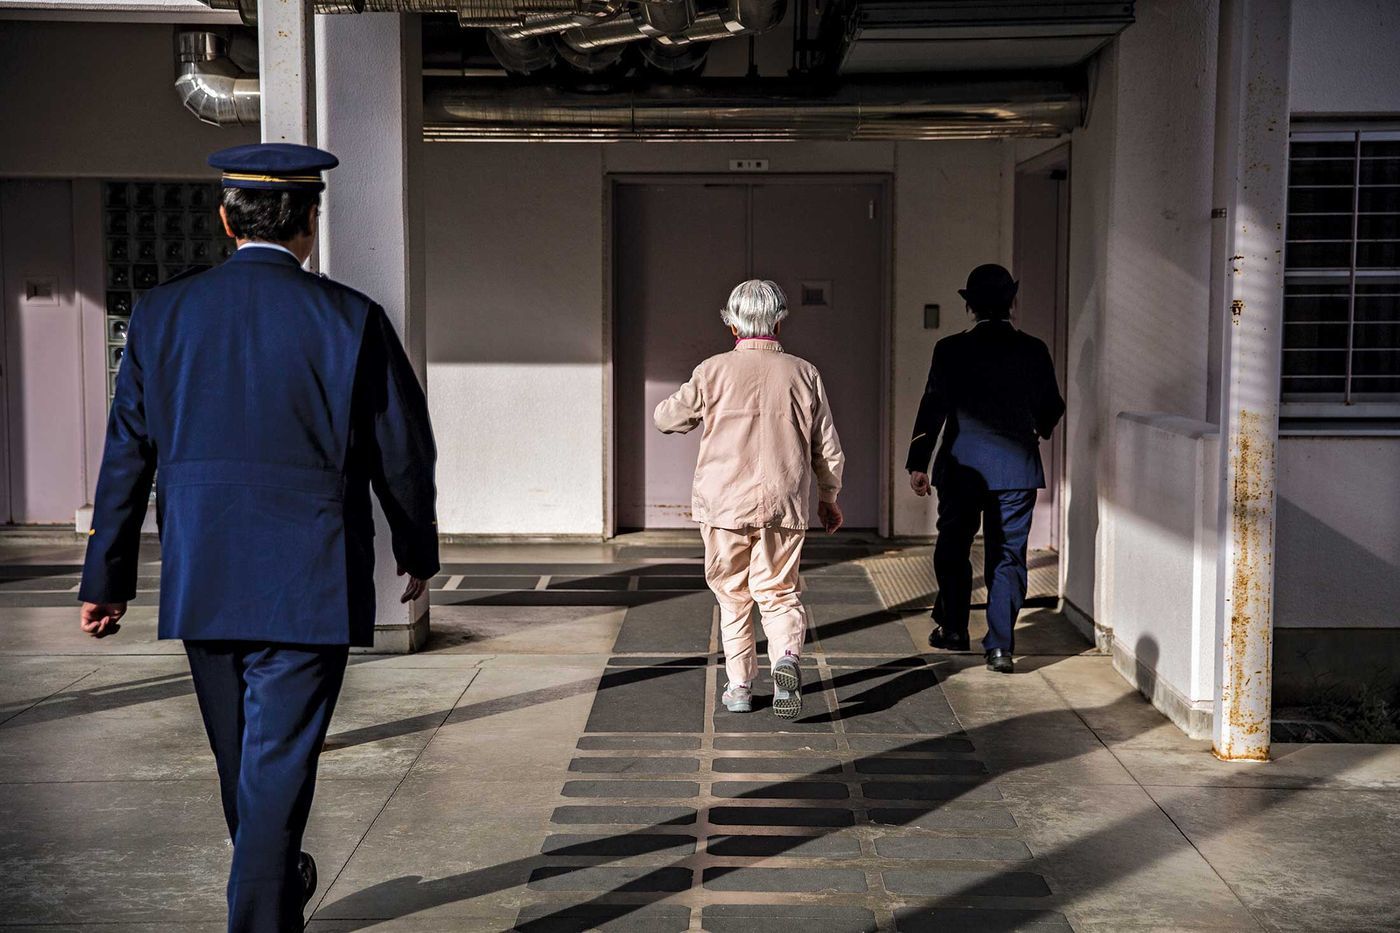 Vì sao các nữ phạm nhân cao tuổi ở Nhật thích ở tù?